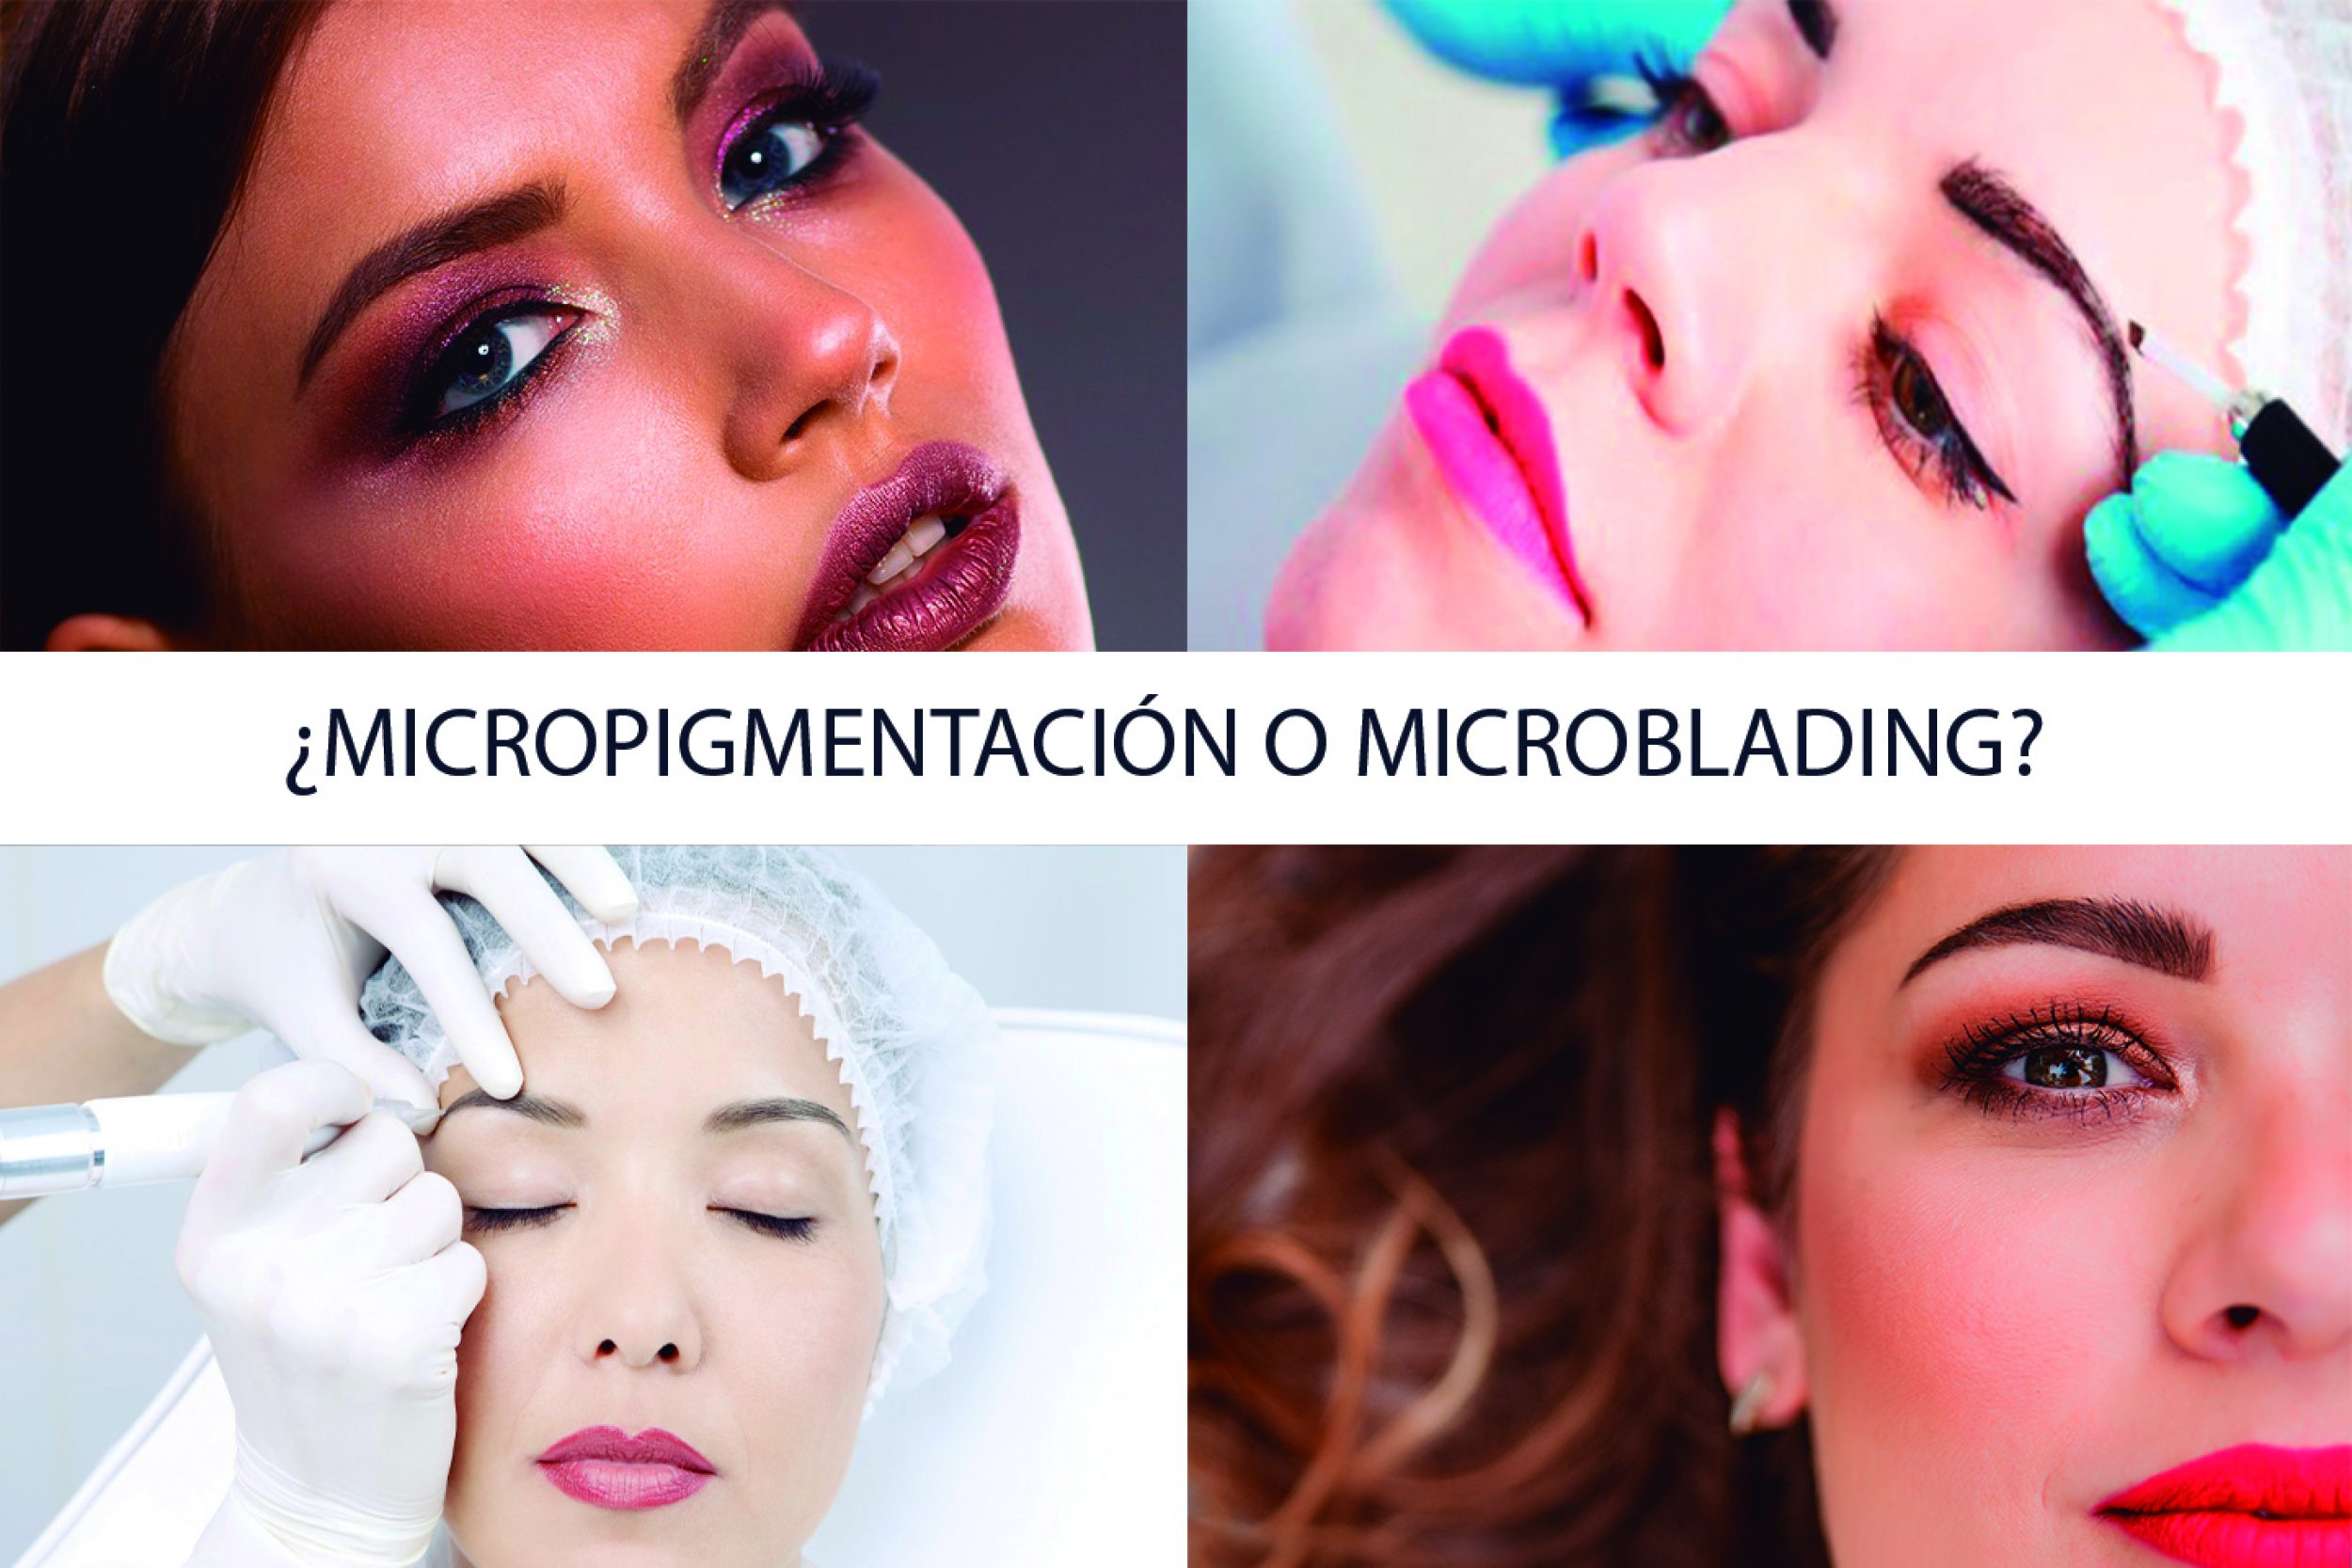 Micropigmentación o microblading? - El blog de Mar Díaz